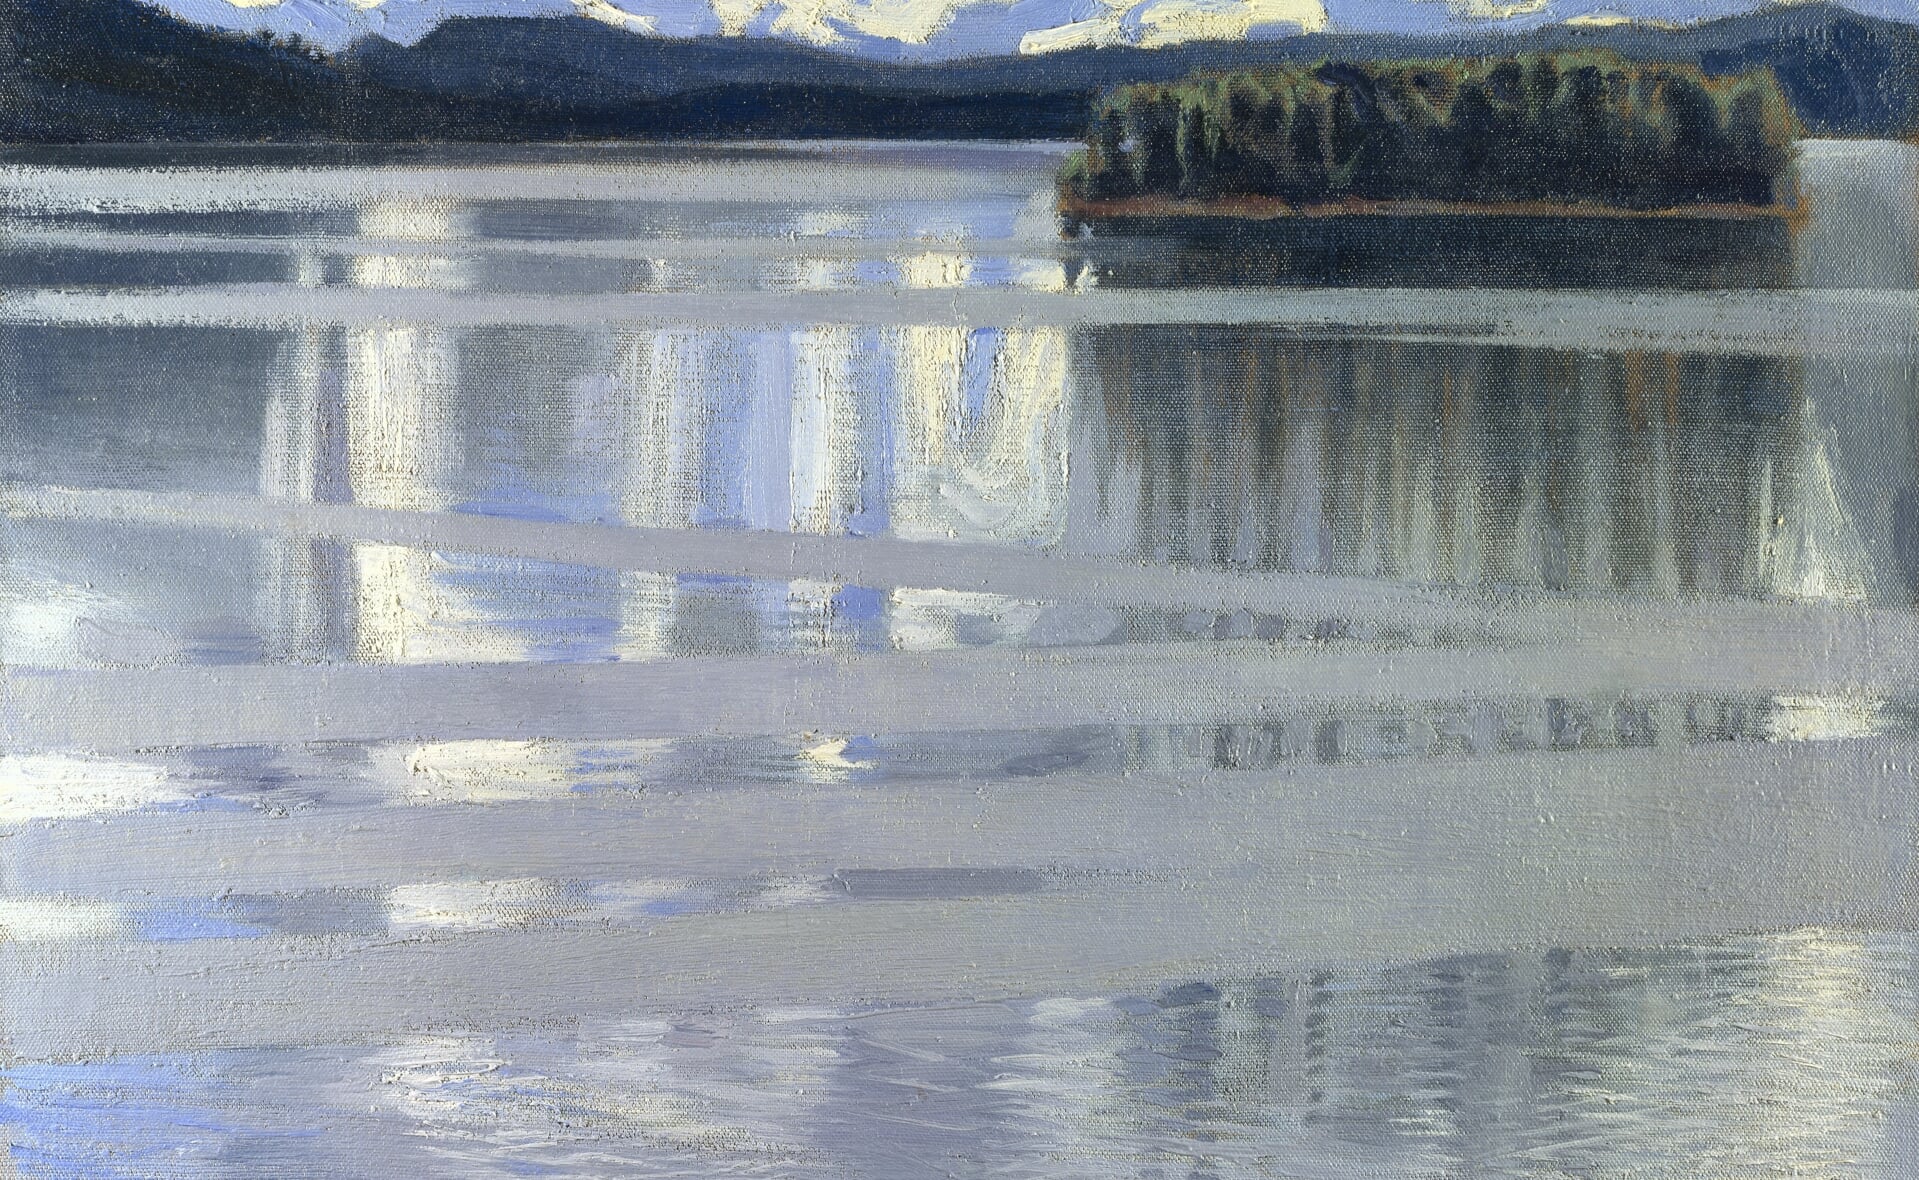 Keitele meer in Finland, geschilderd door Akseli Gallen-Kallele (1865-1930) in 1905. 